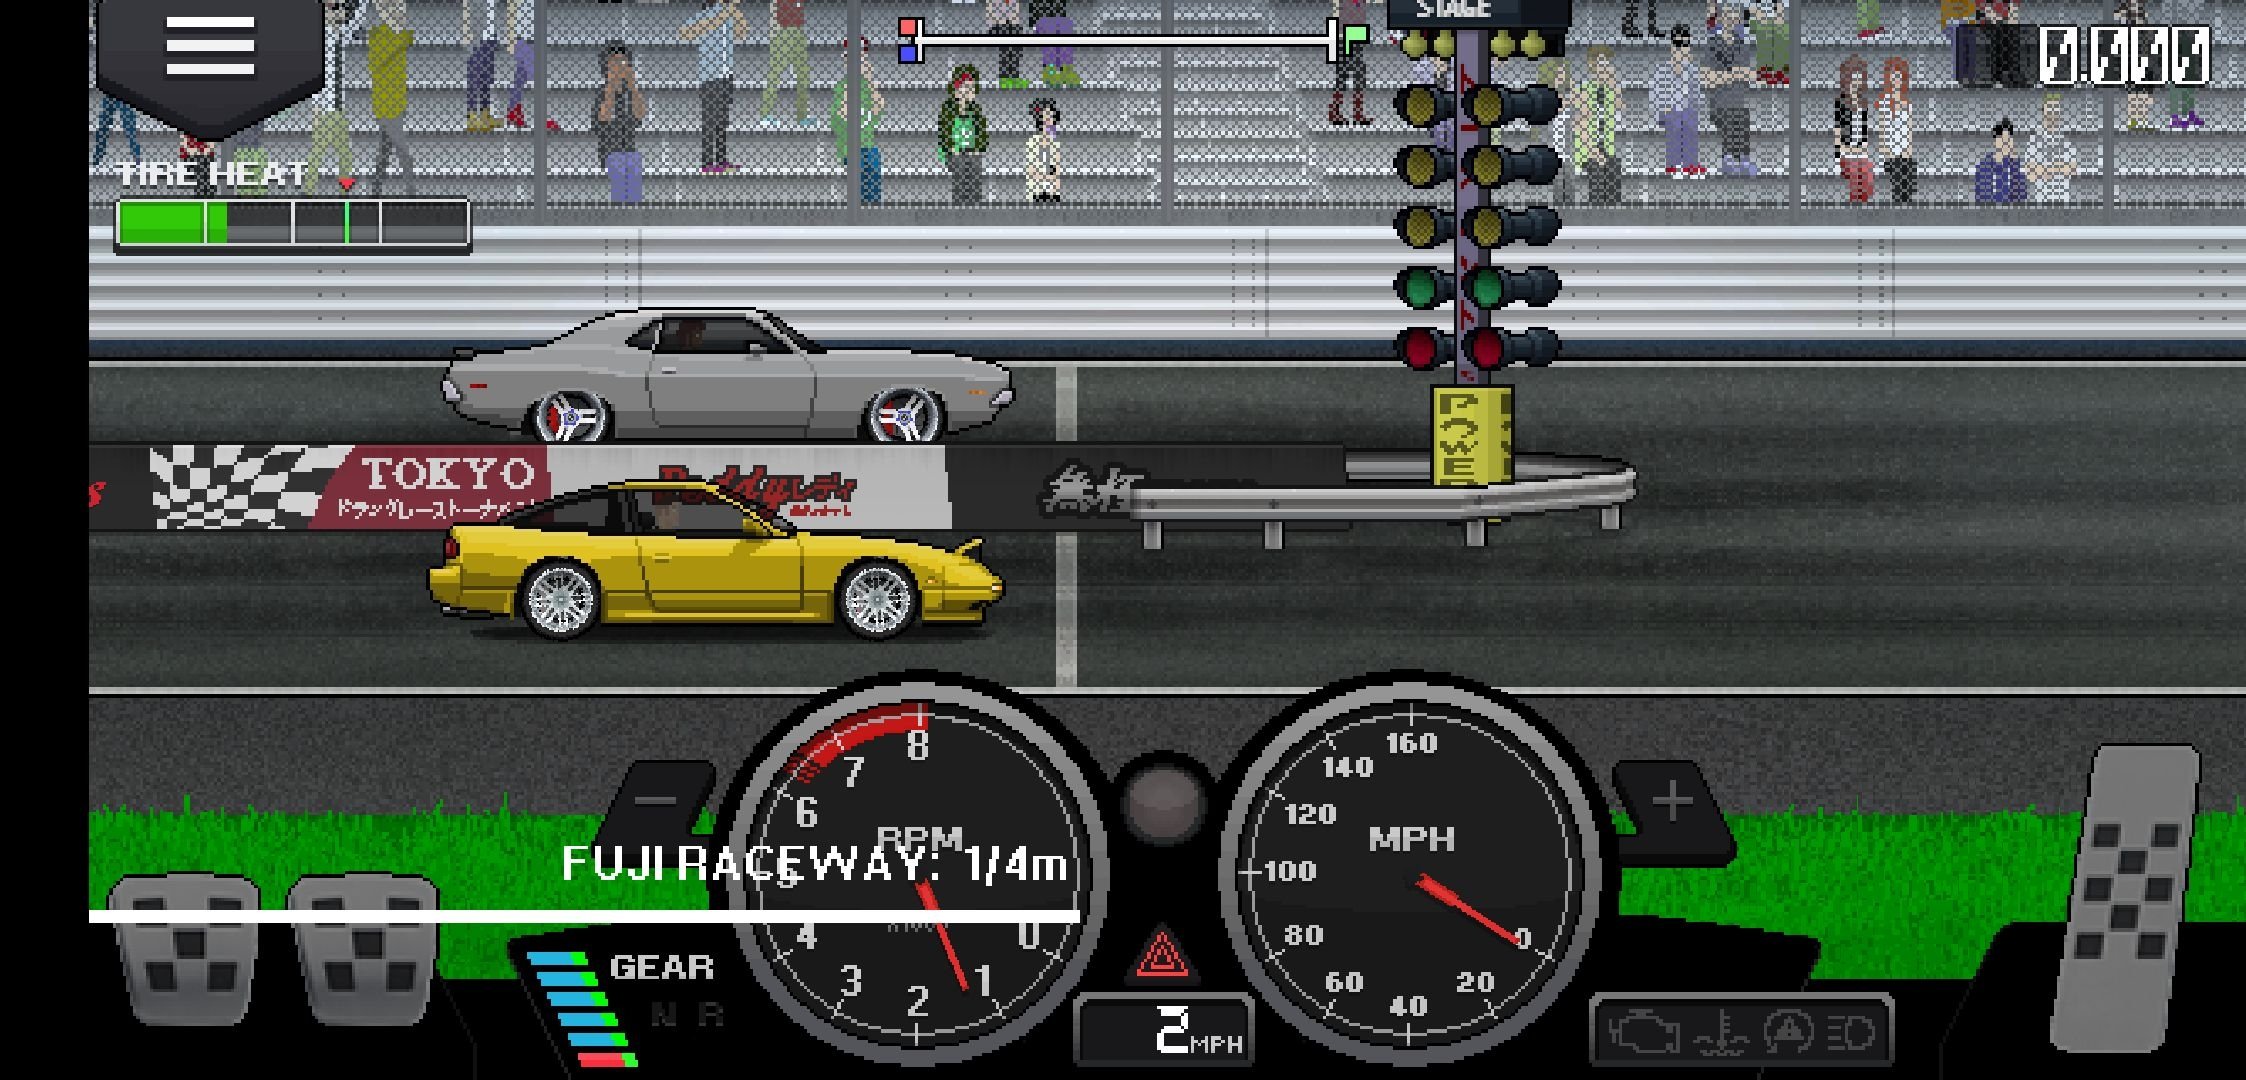 pixel car racer story mode apk